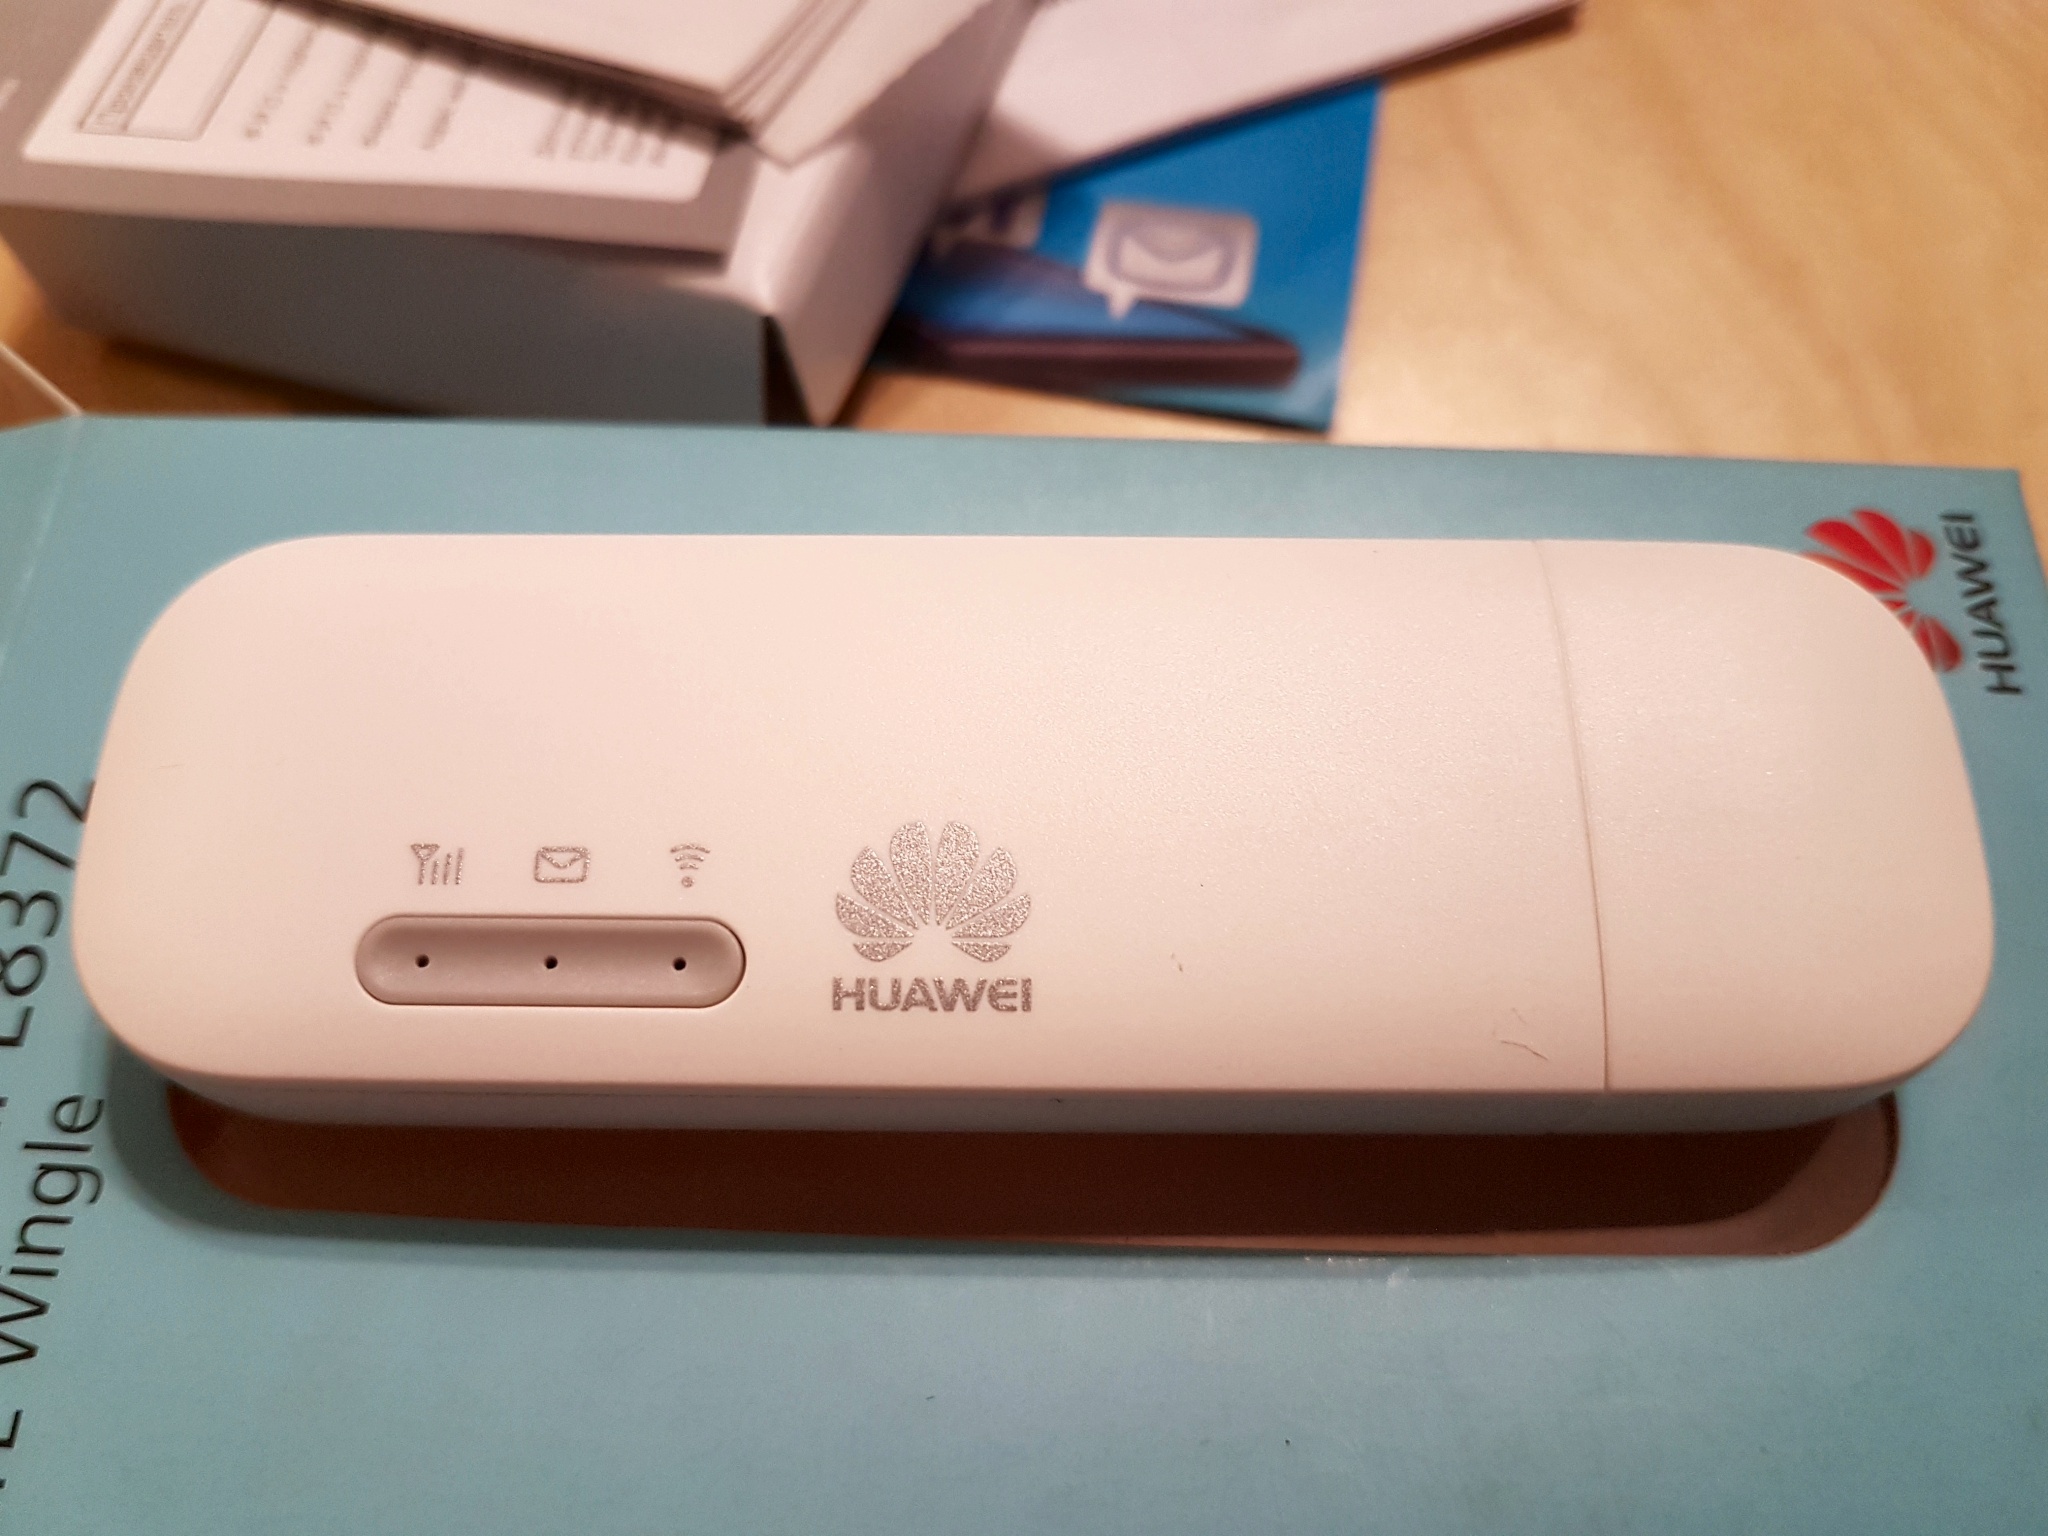 Huawei 8372